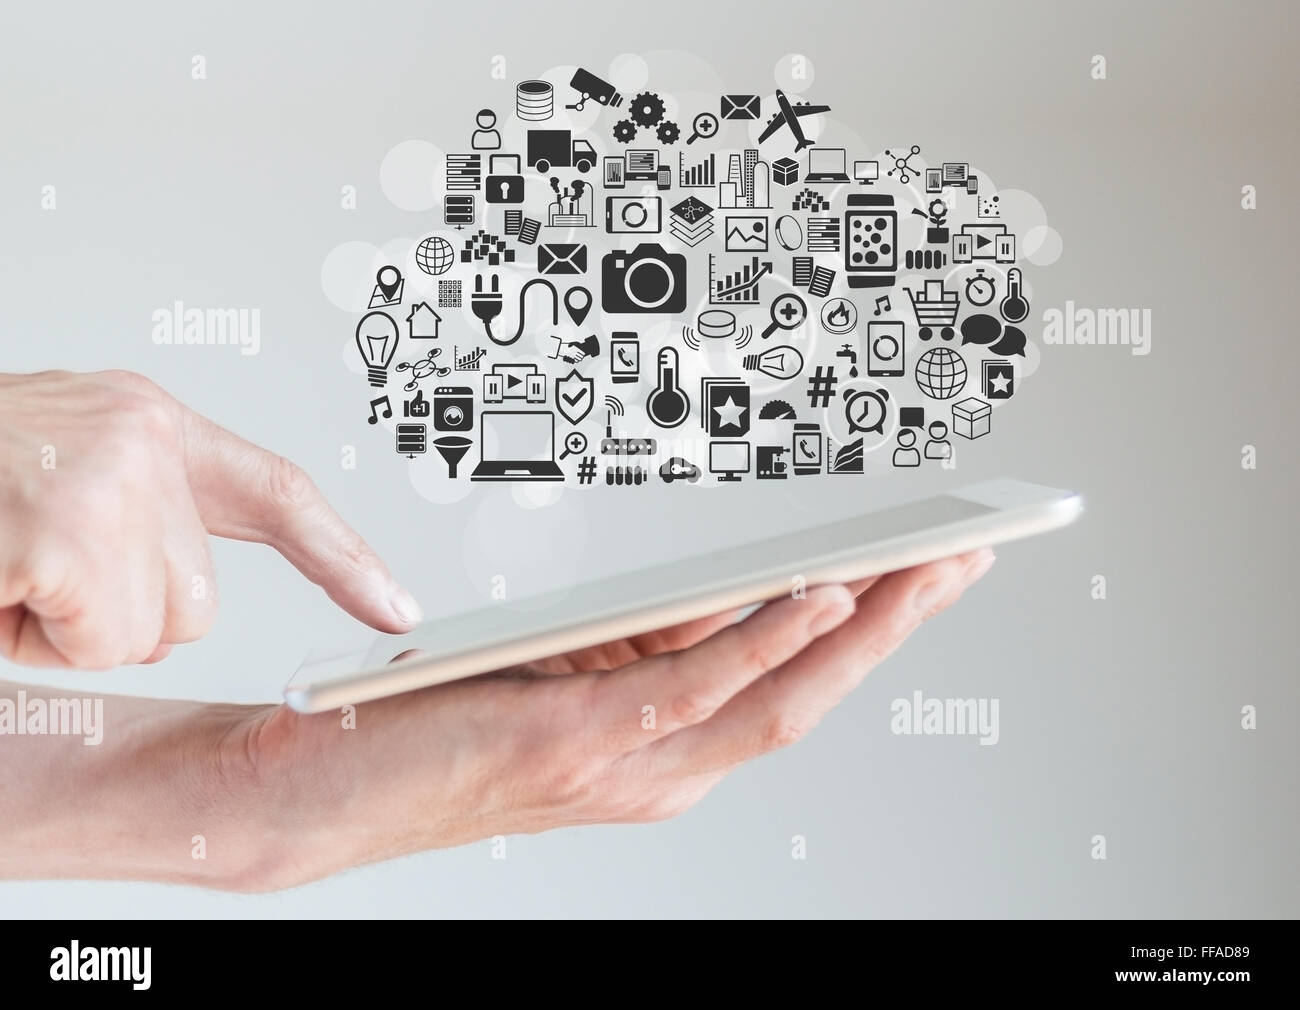 Hands holding tablet grâce au cloud computing concept Banque D'Images